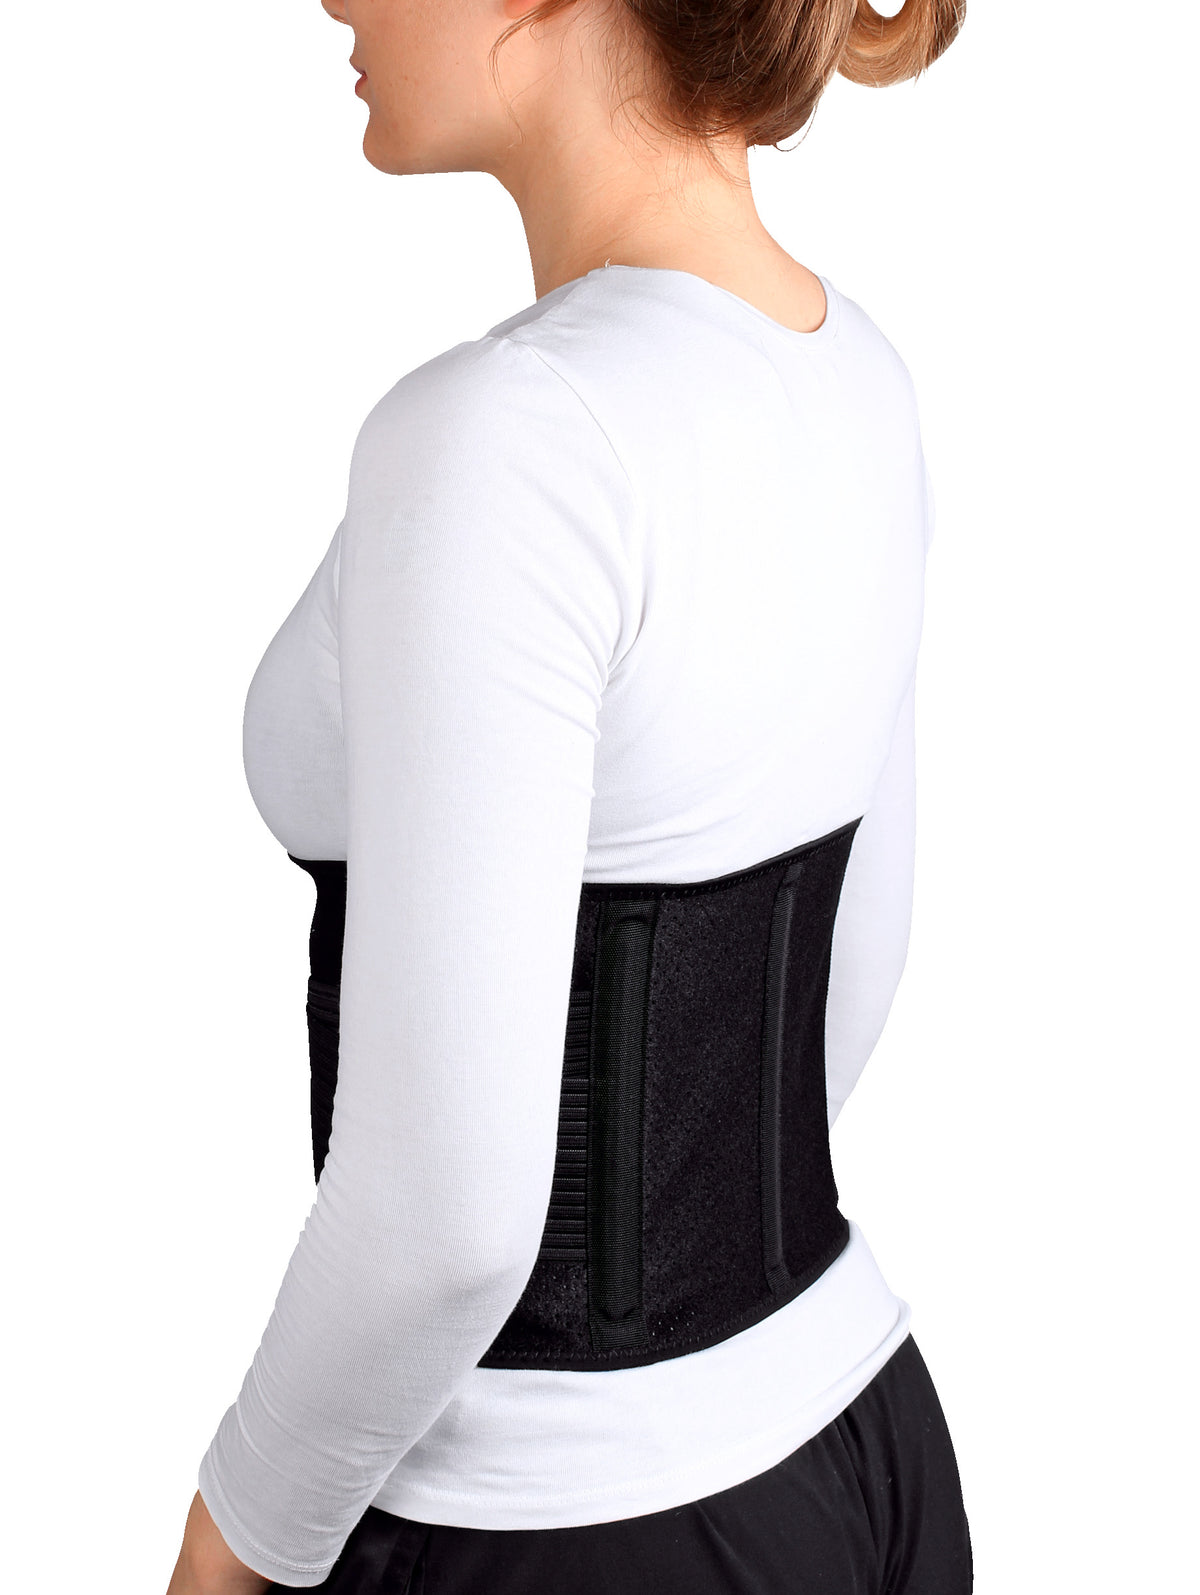 Flexitek Aktiv Rückenbandage